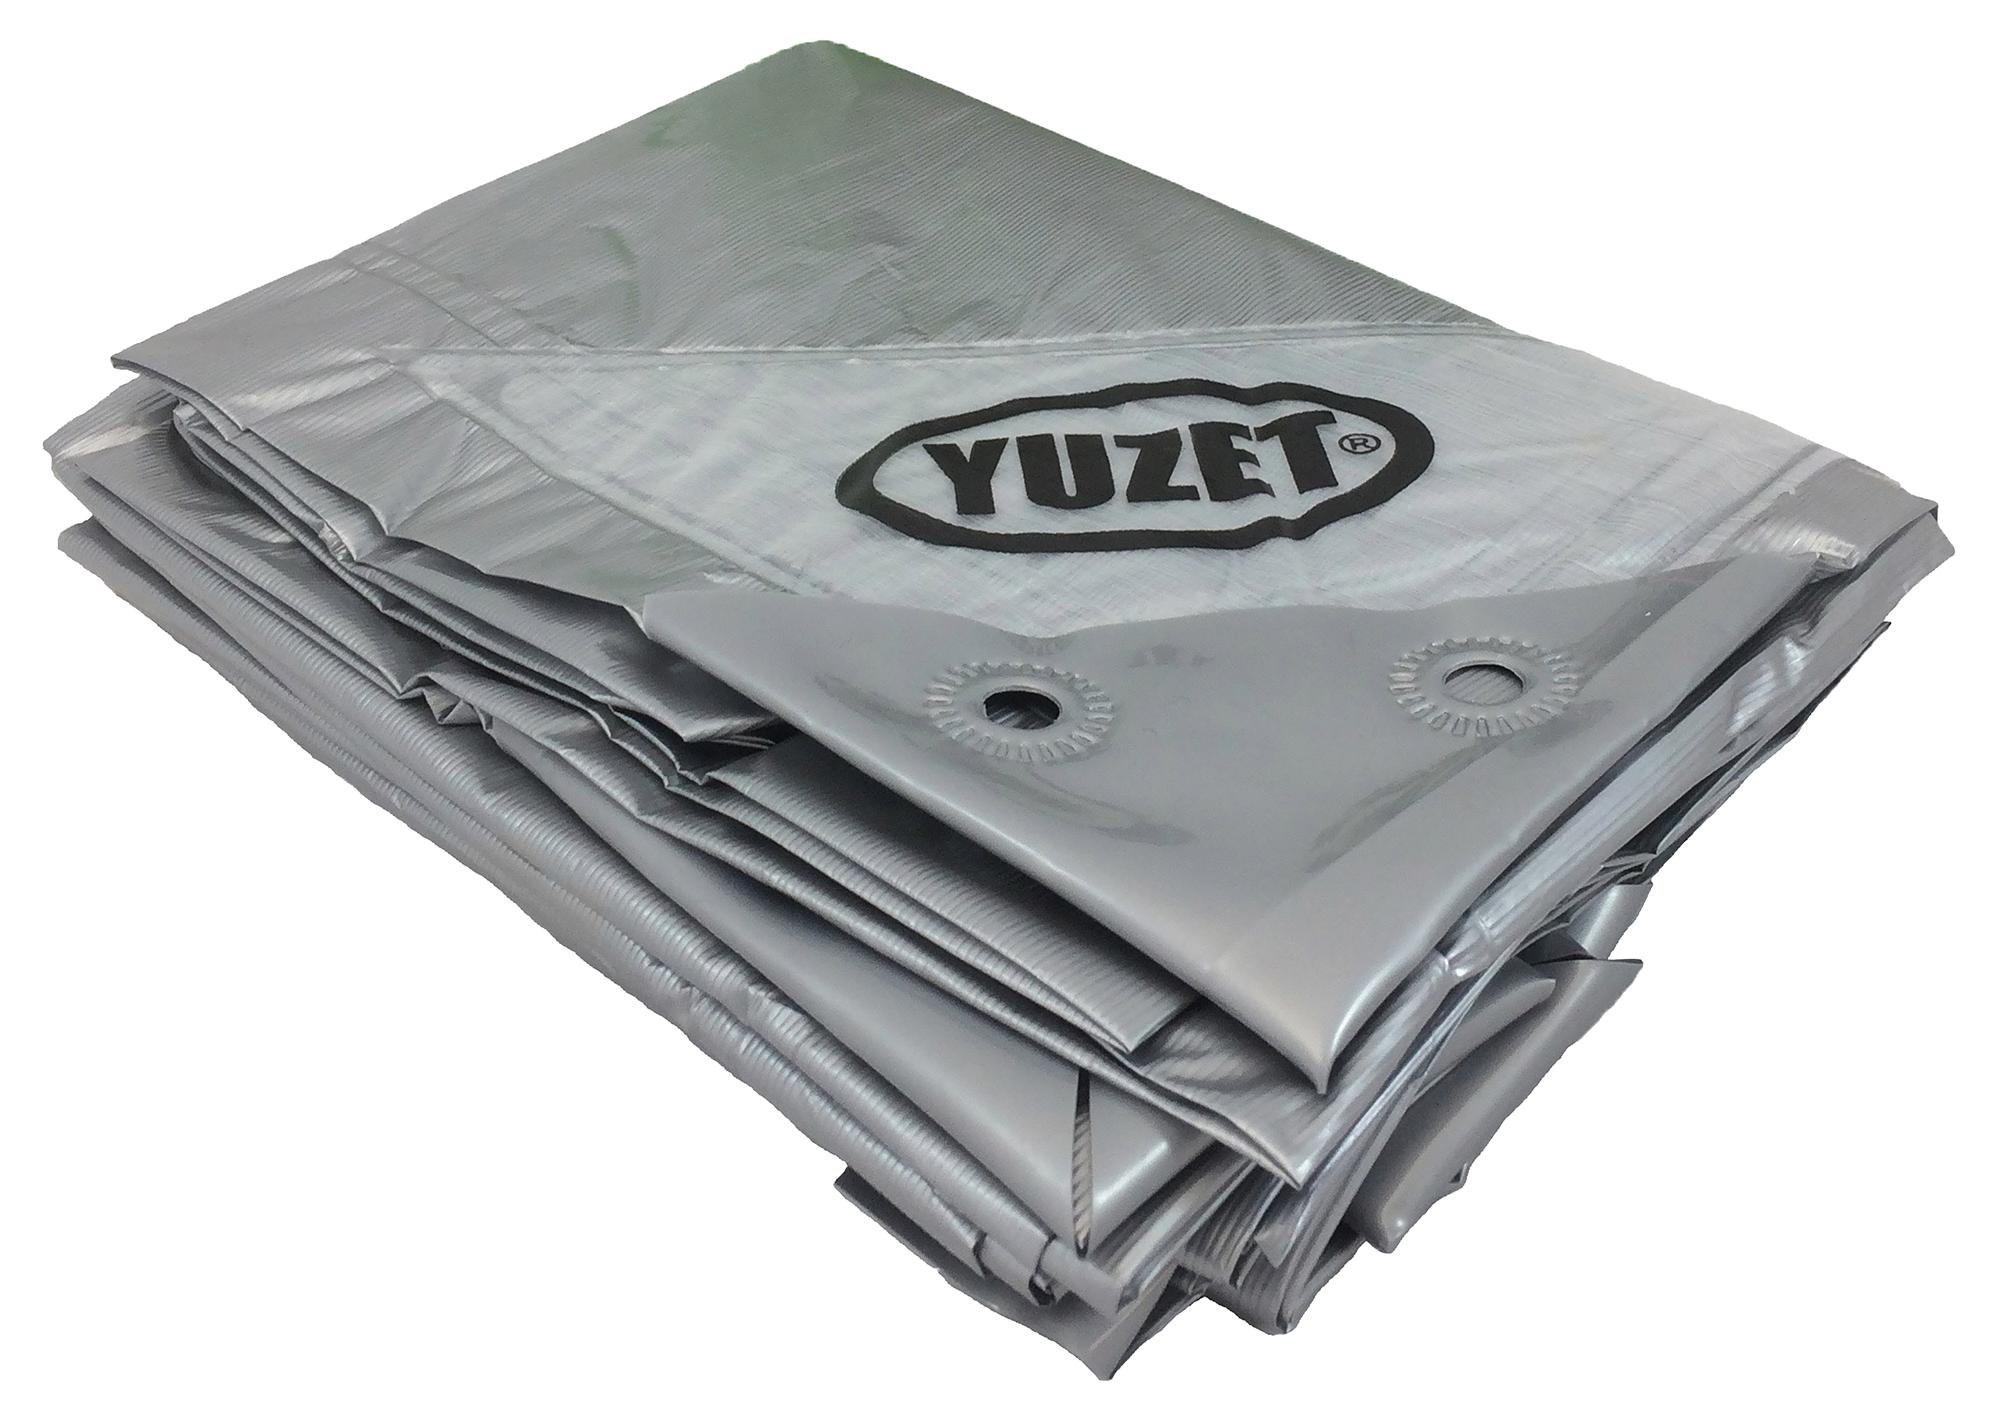 Yuzet 7105 3.5M X 5.4M Tarpaulin - Silver